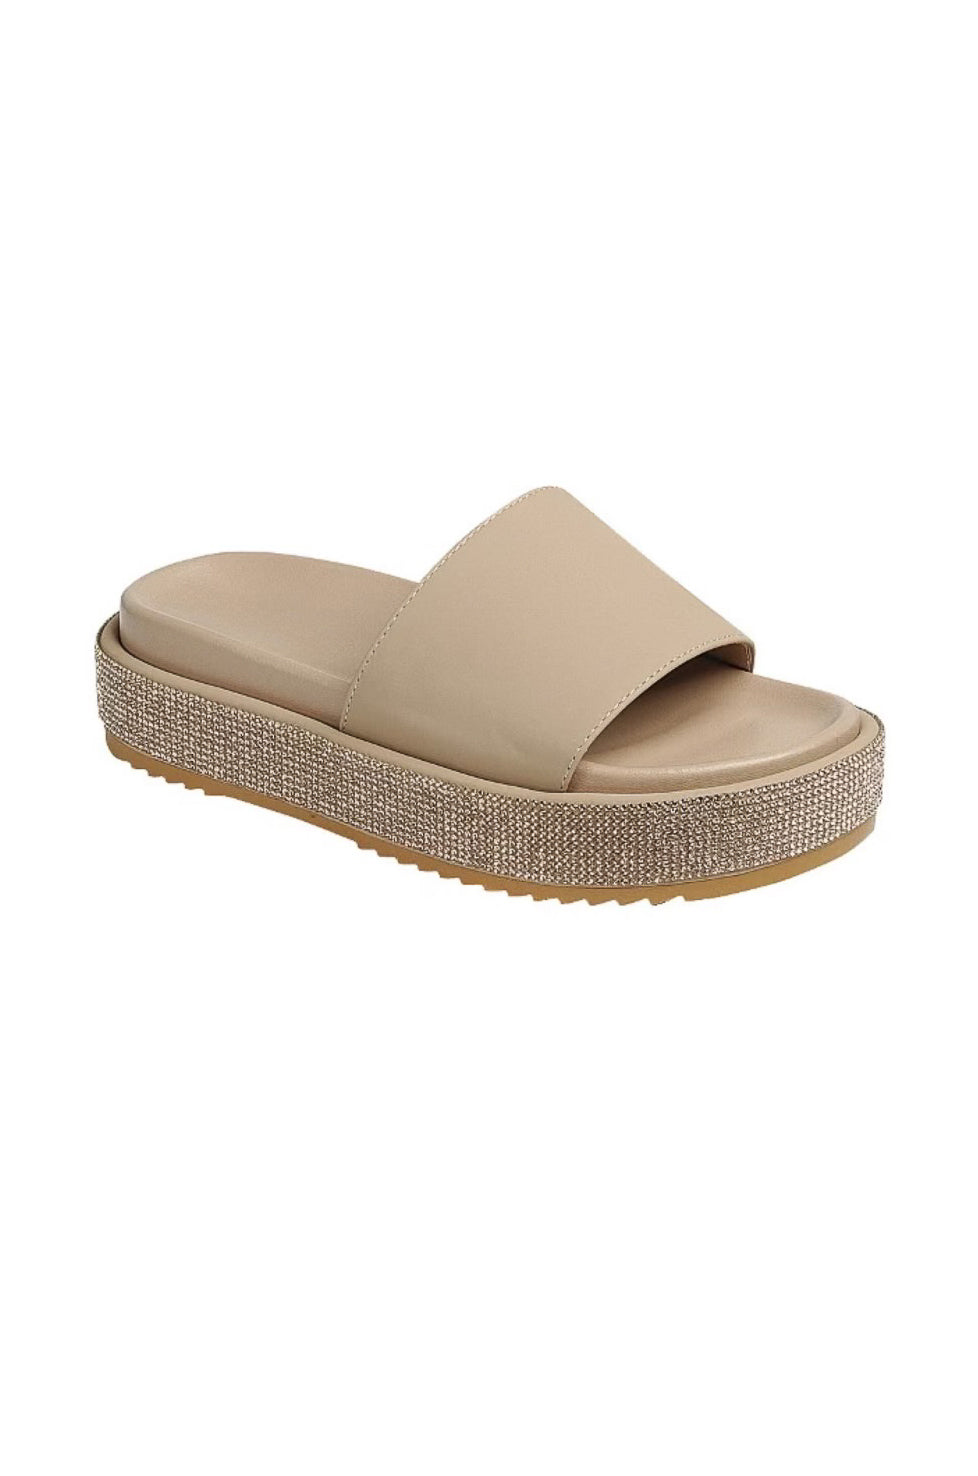 Gibara - Embellished Platform Slip On Sandals